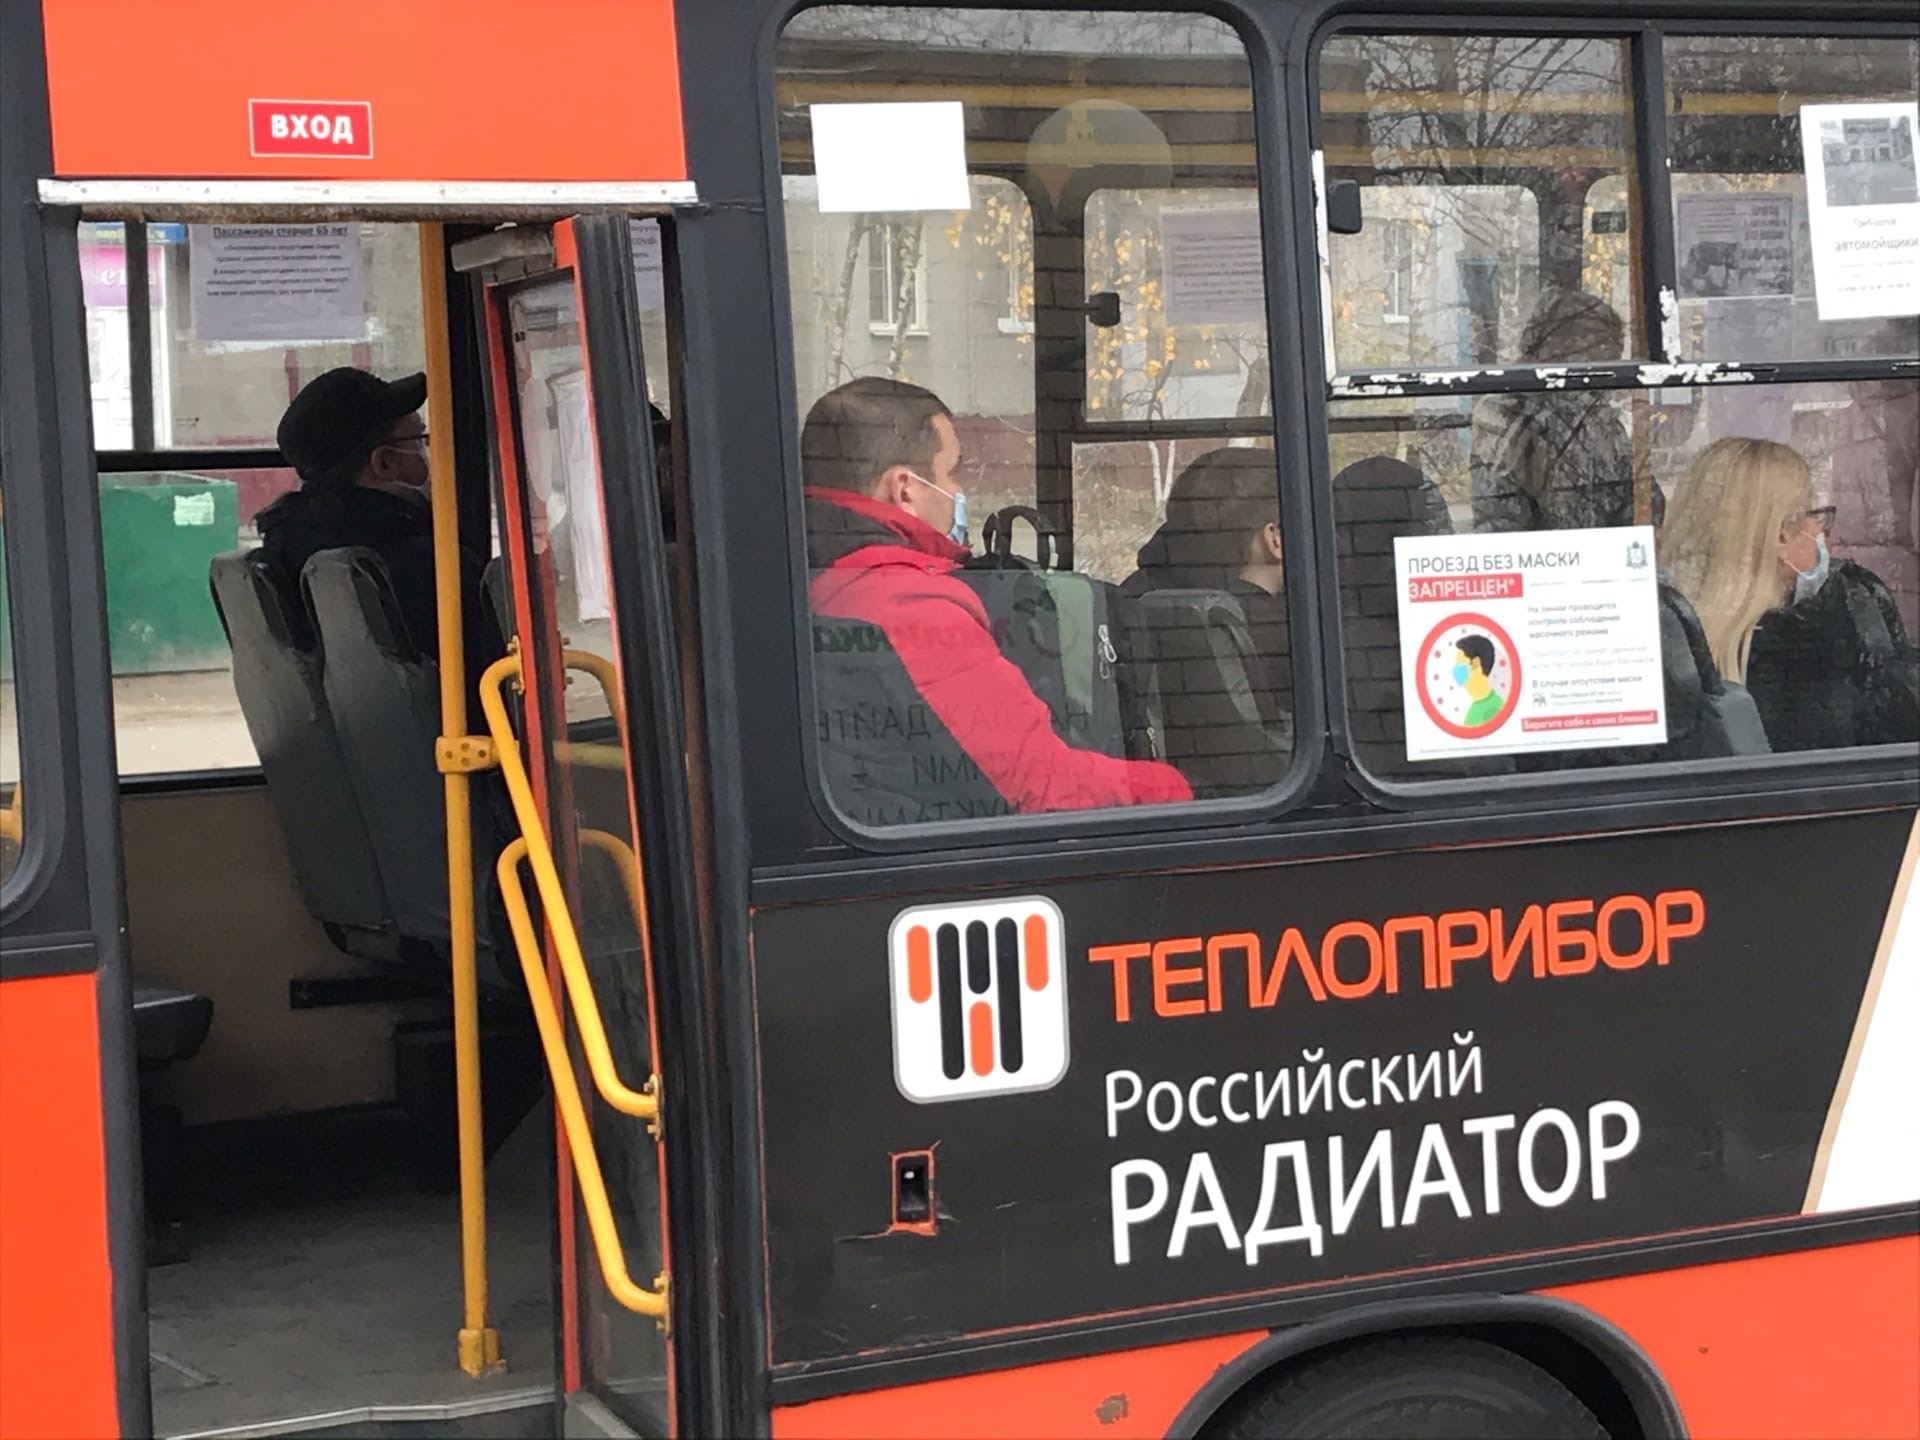 Стоимость проезда поднимают по всей России: Нижний не стал исключением